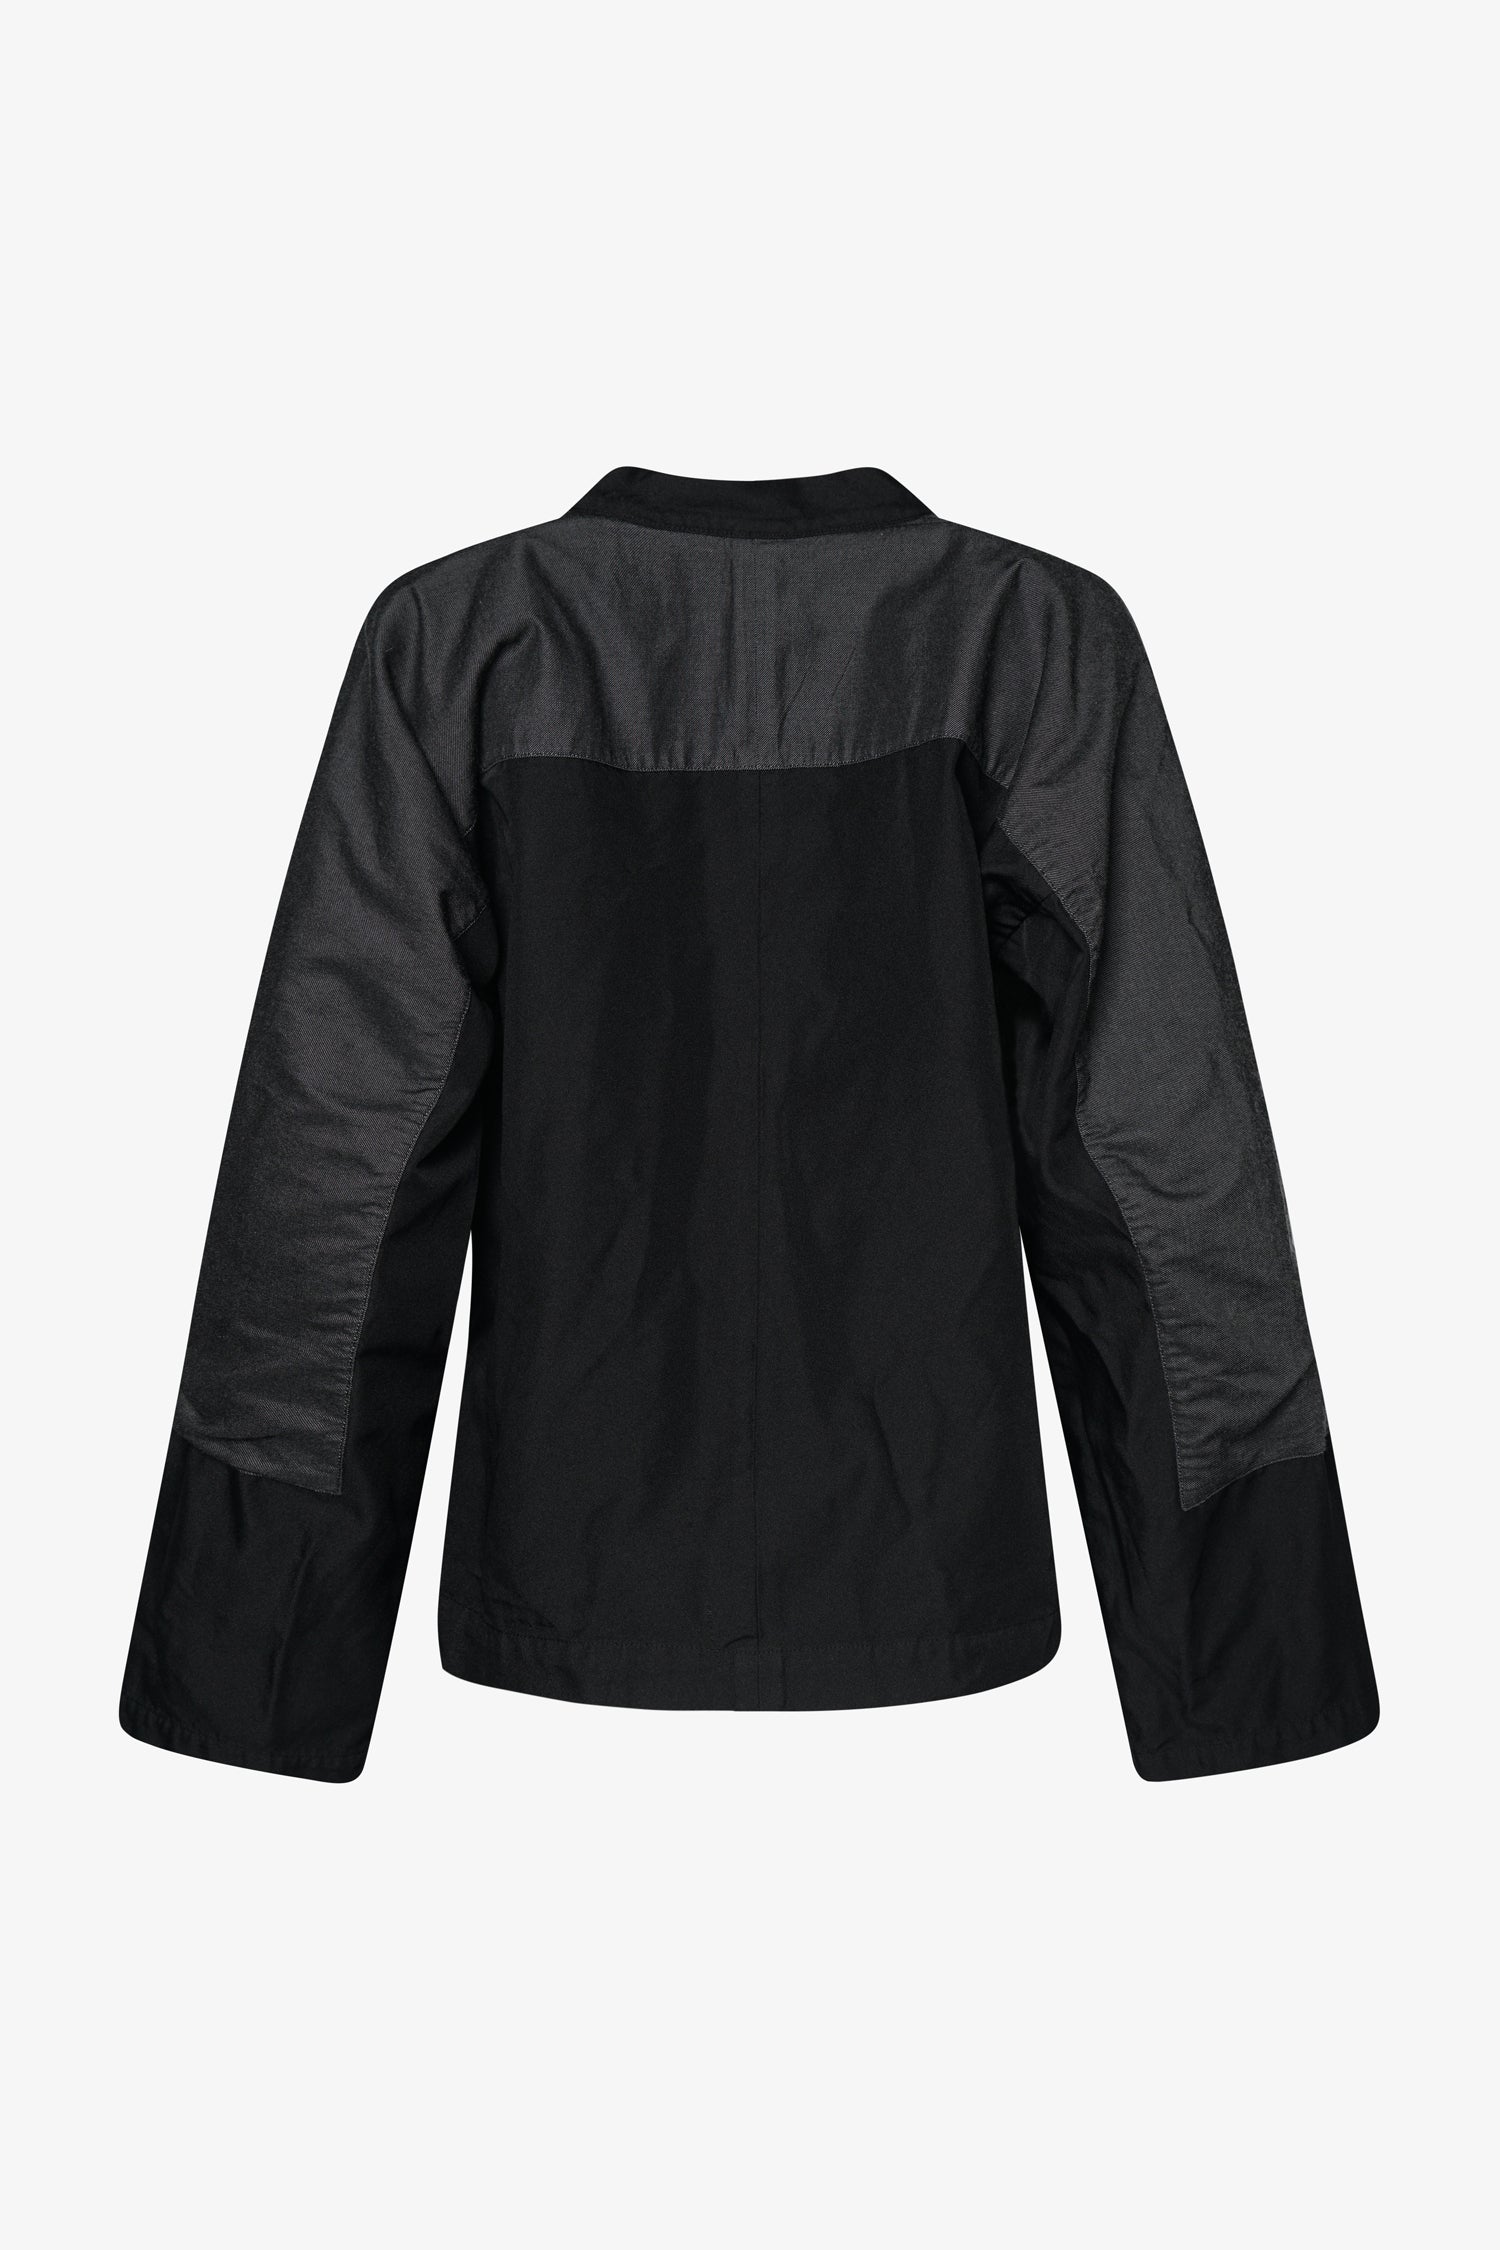 Selectshop FRAME - COMME DES GARCONS COMME DES GARCONS Shell-Panelled Oversized Jacket Outerwear Dubai